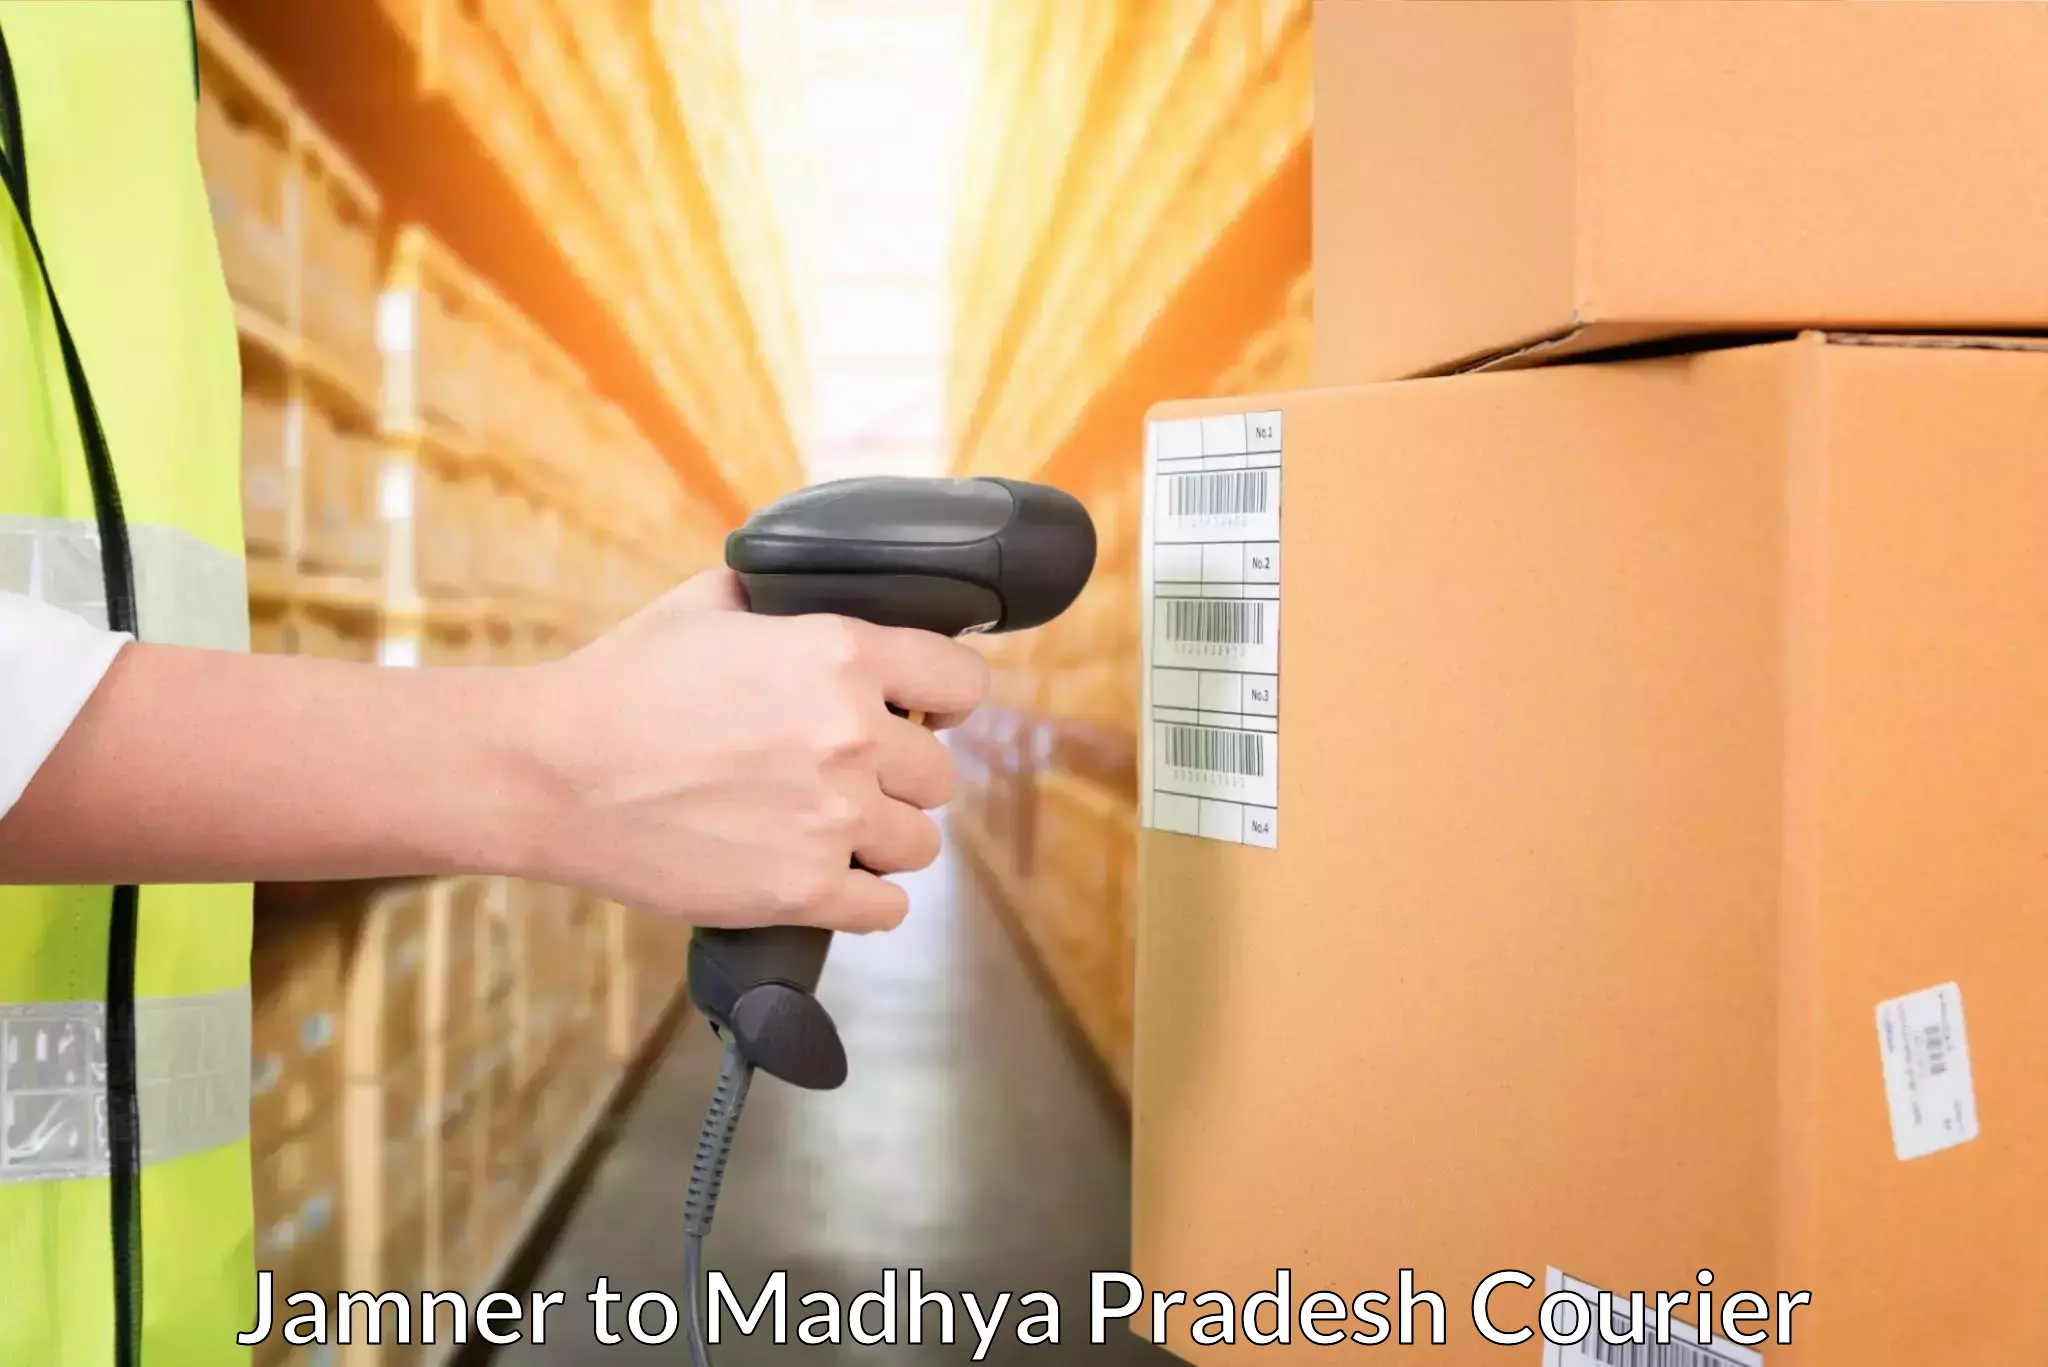 24/7 courier service Jamner to Madhya Pradesh